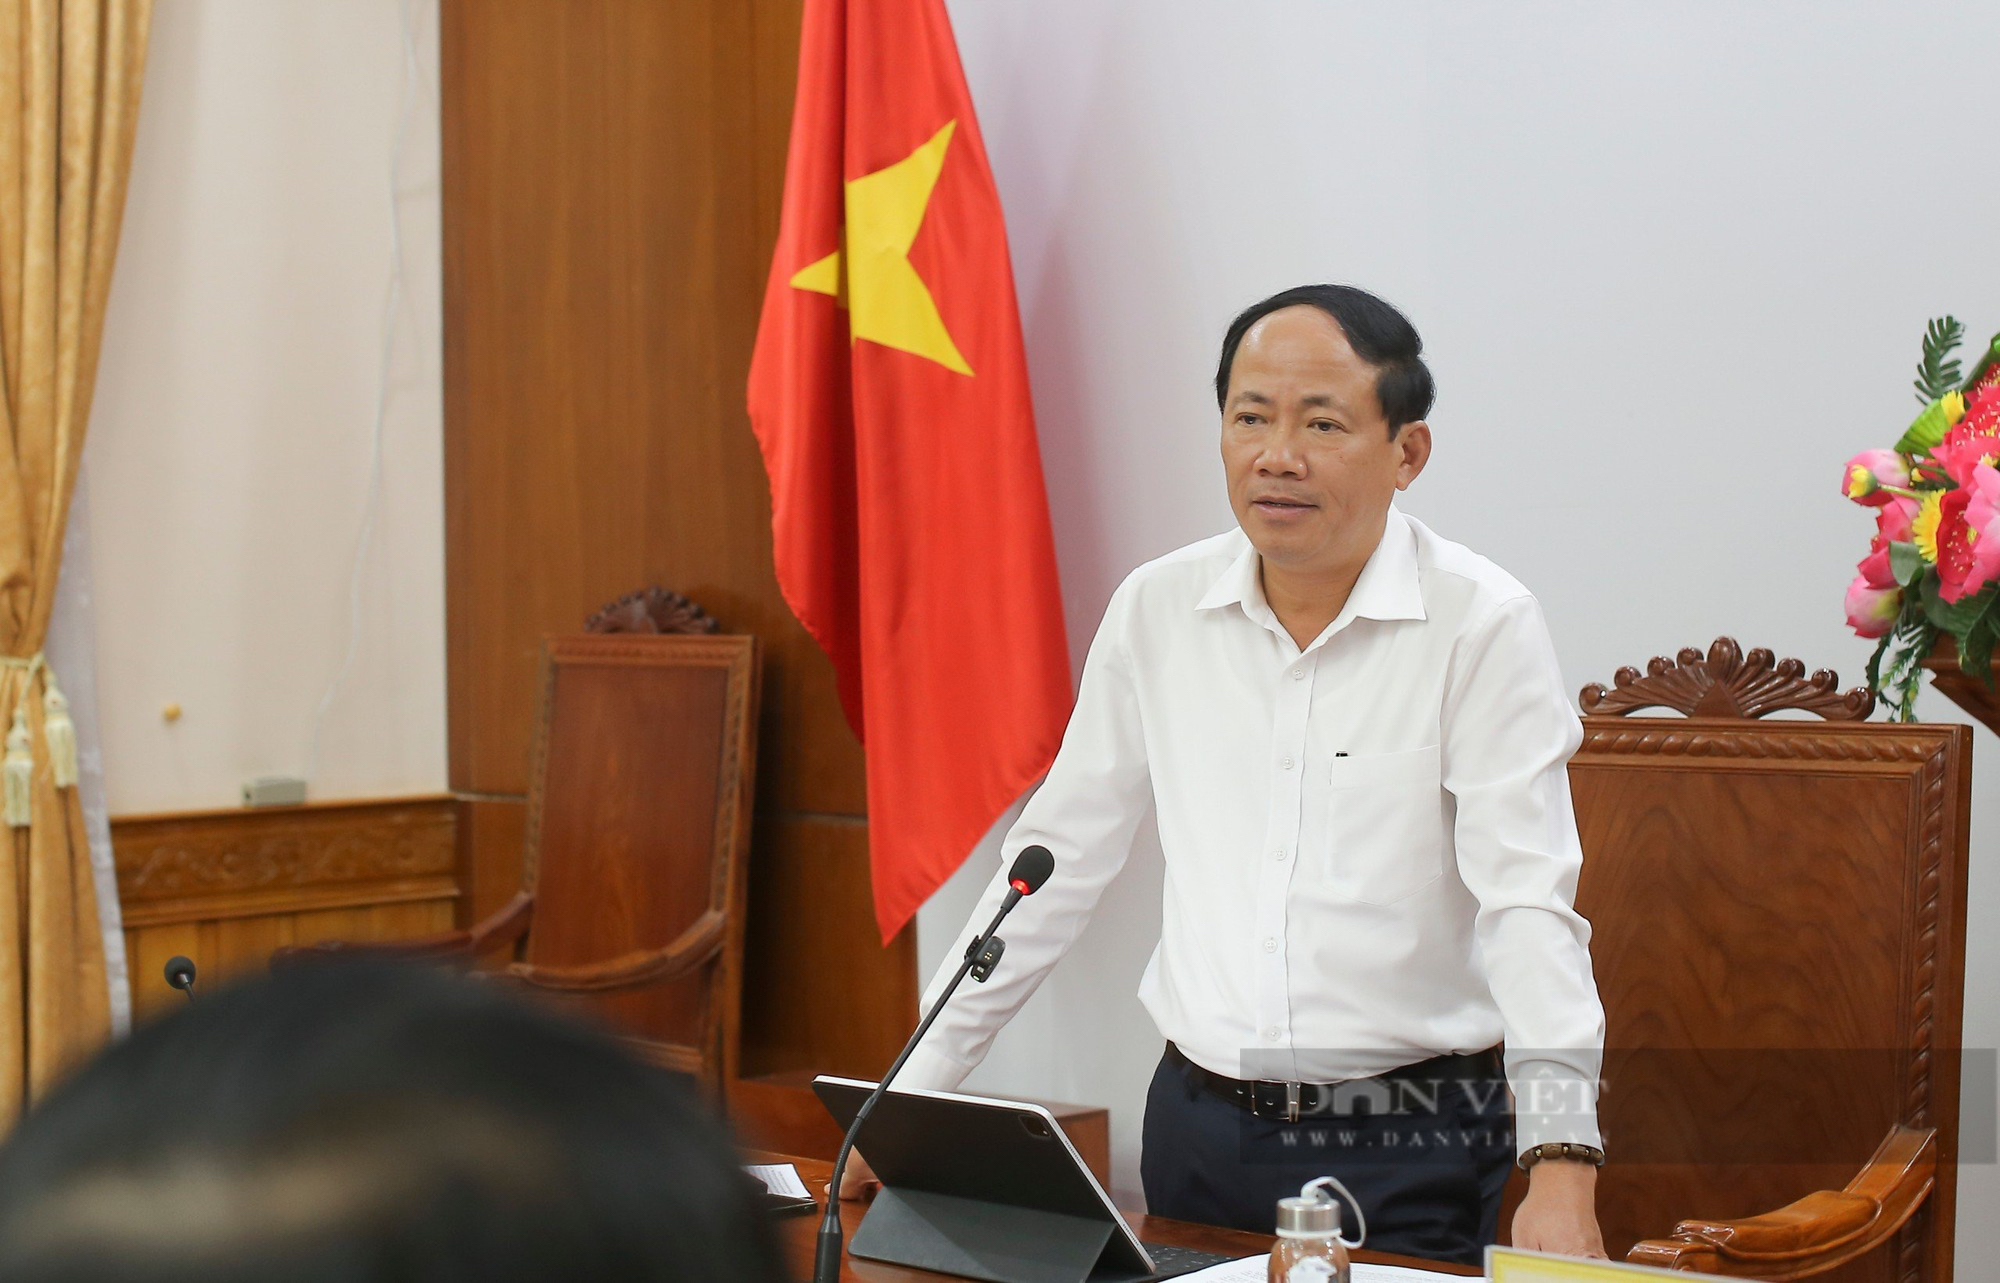 Chủ tịch UBND tỉnh Bình Định: Đang xin ý kiến về việc  cấm biển hơn 100 tàu nghi ngờ cao vi phạm IUU- Ảnh 1.